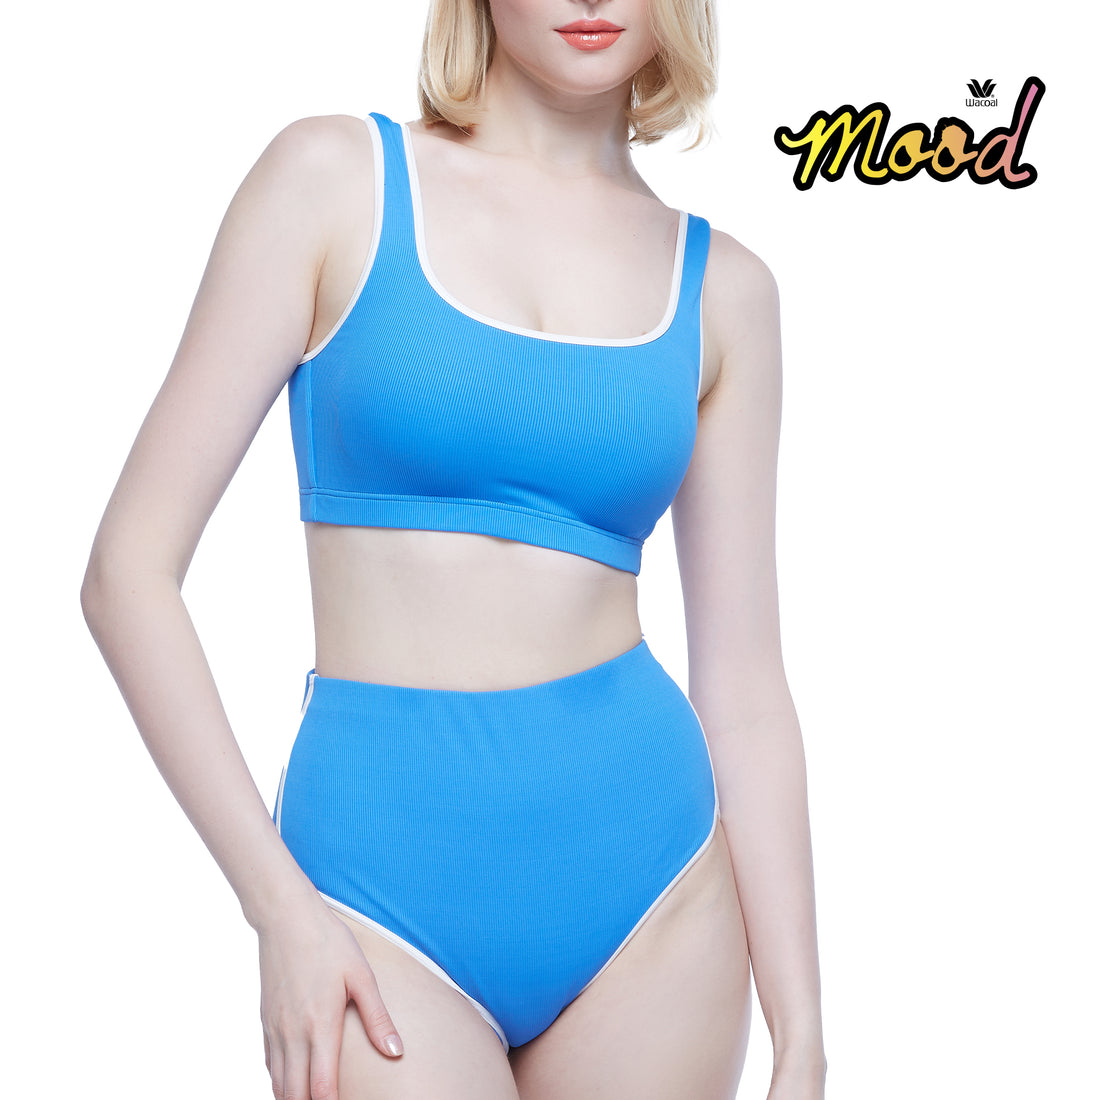 Wacoal Mood Set Beach &amp; Bra Swimwear Set (Tops and pants) model MM1U02 + MM6U02 blue color (CU)